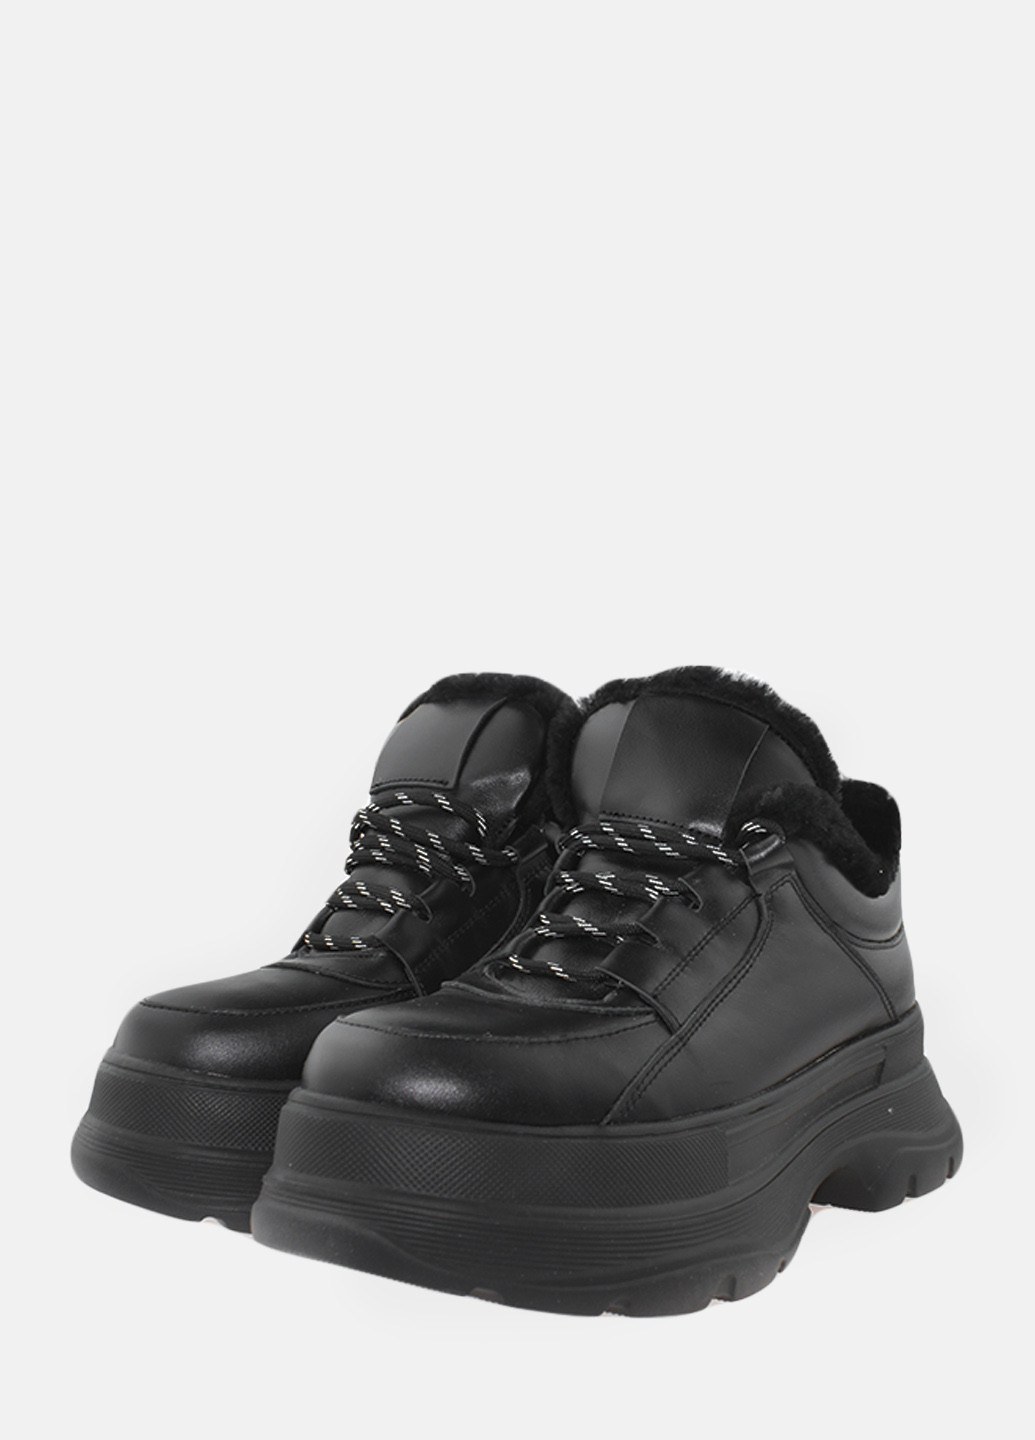 Зимние ботинки rsm60155 черный Sothby's